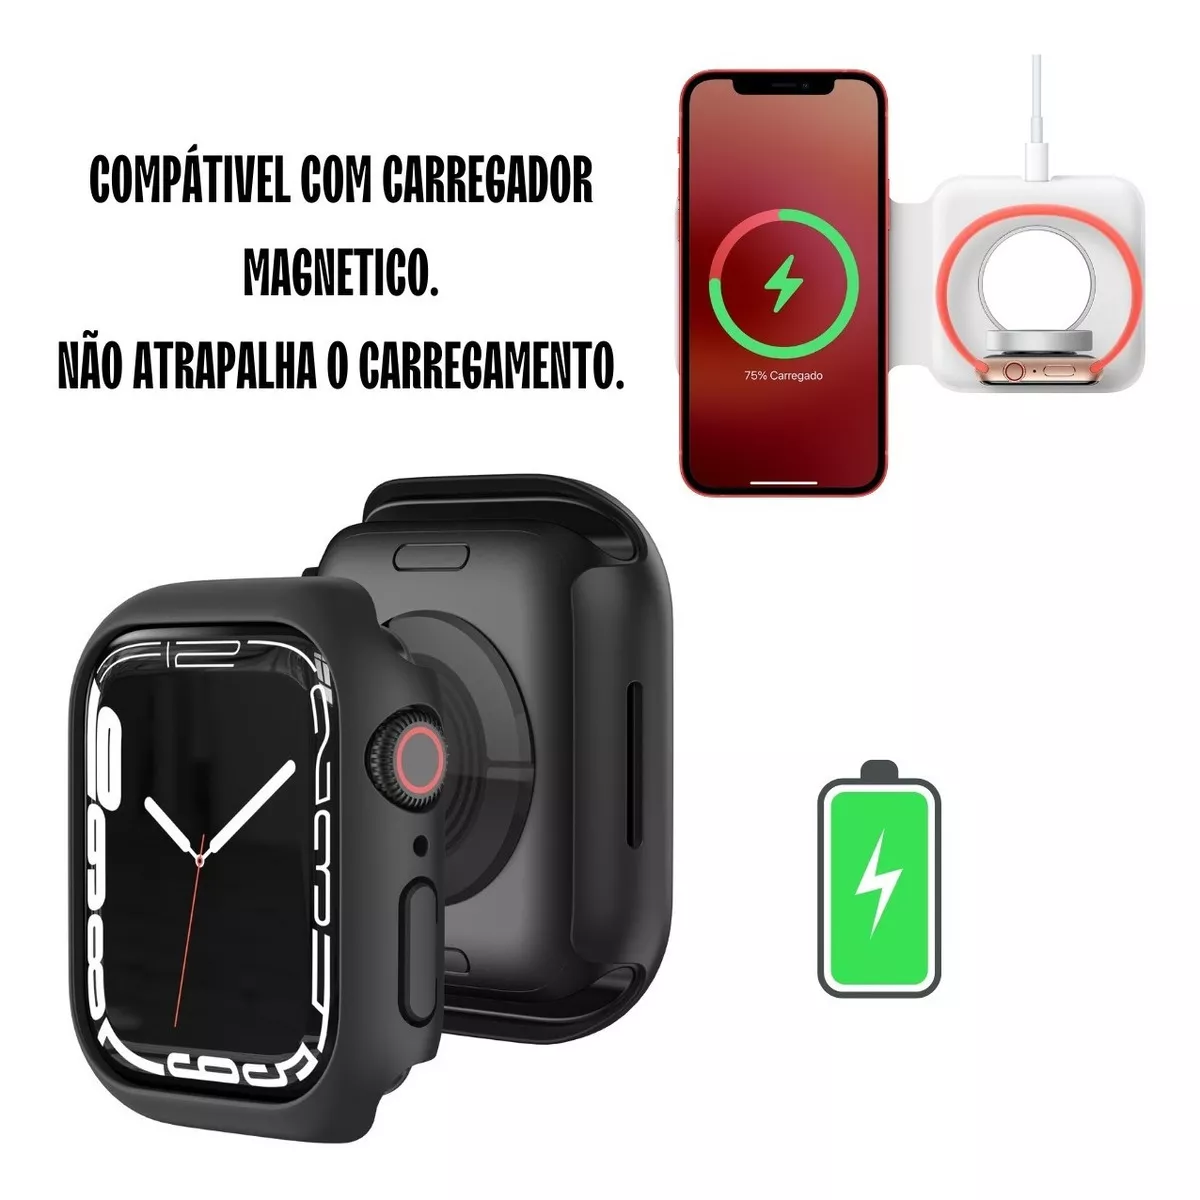 Primeira imagem para pesquisa de capa de relogio smartwatch